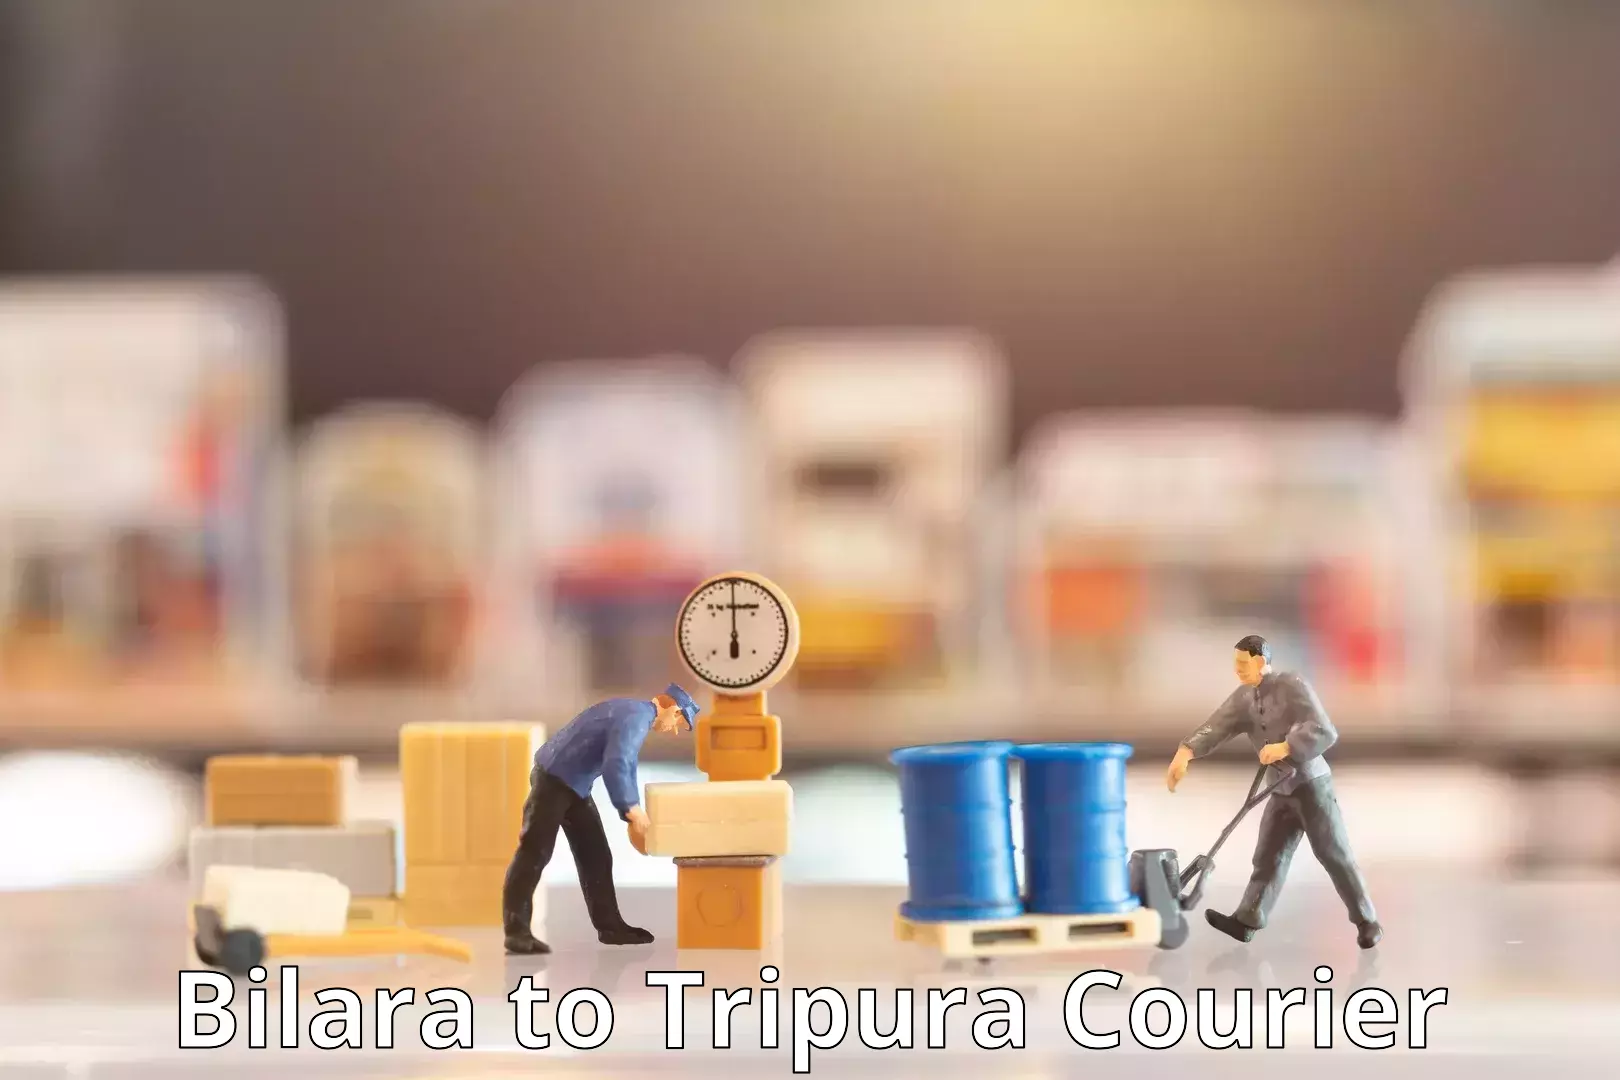 Courier dispatch services Bilara to Ambassa